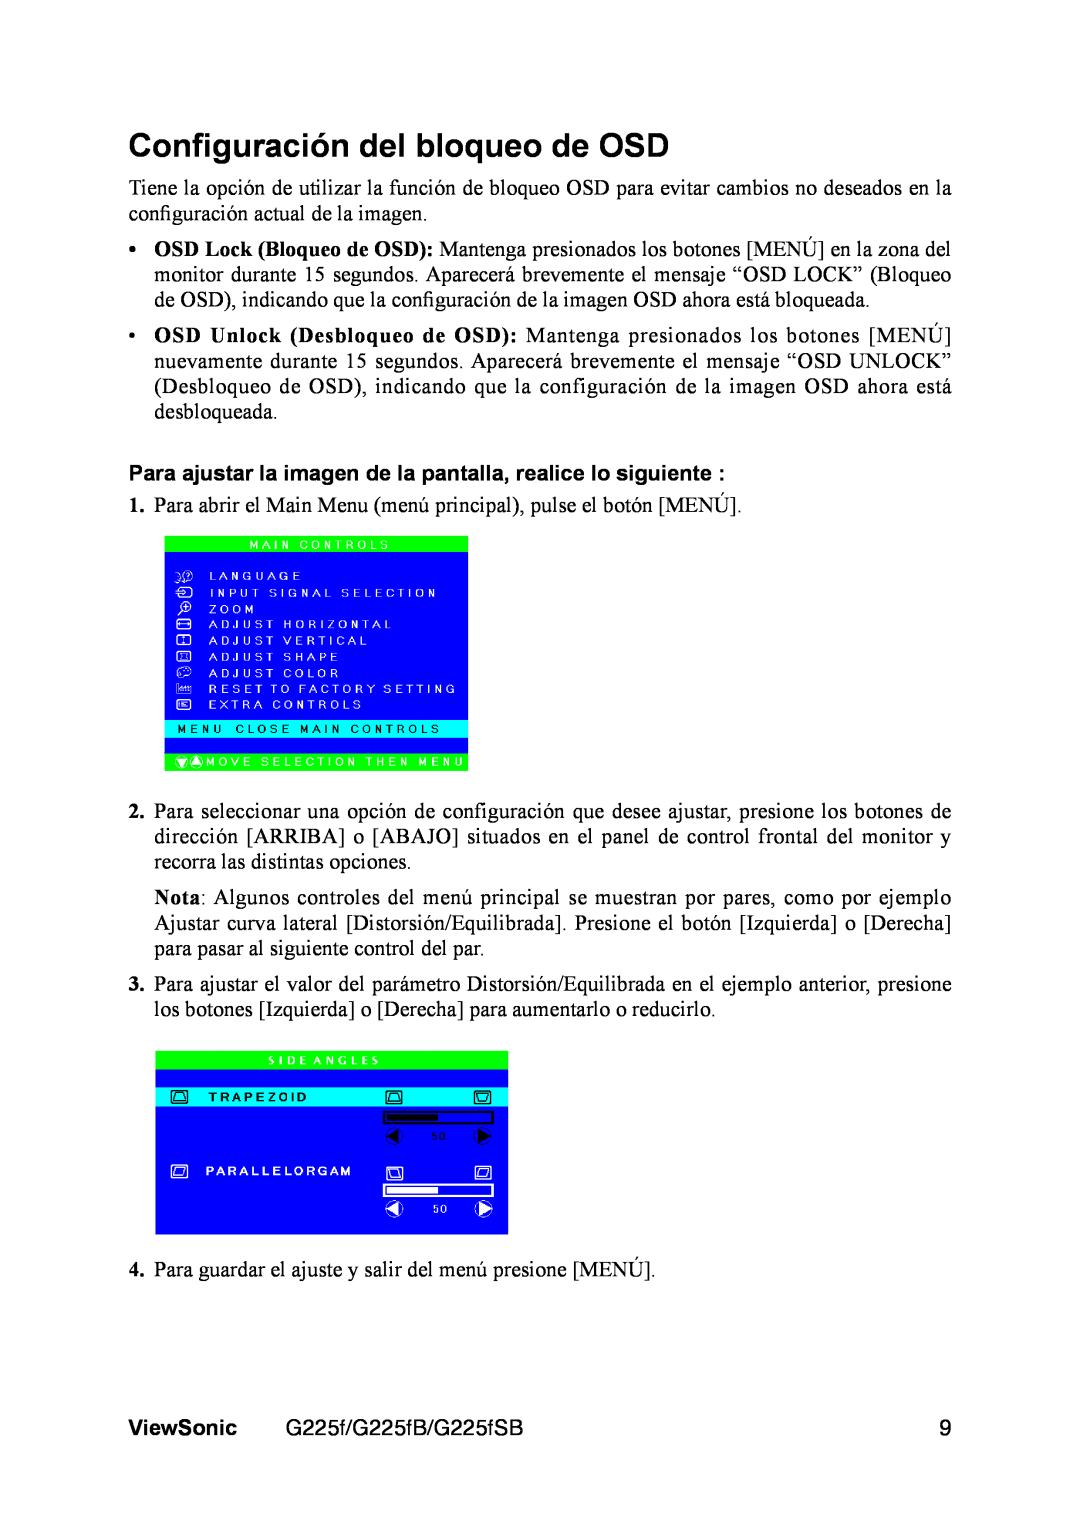 ViewSonic VS11135 Conﬁguración del bloqueo de OSD, Para ajustar la imagen de la pantalla, realice lo siguiente, ViewSonic 